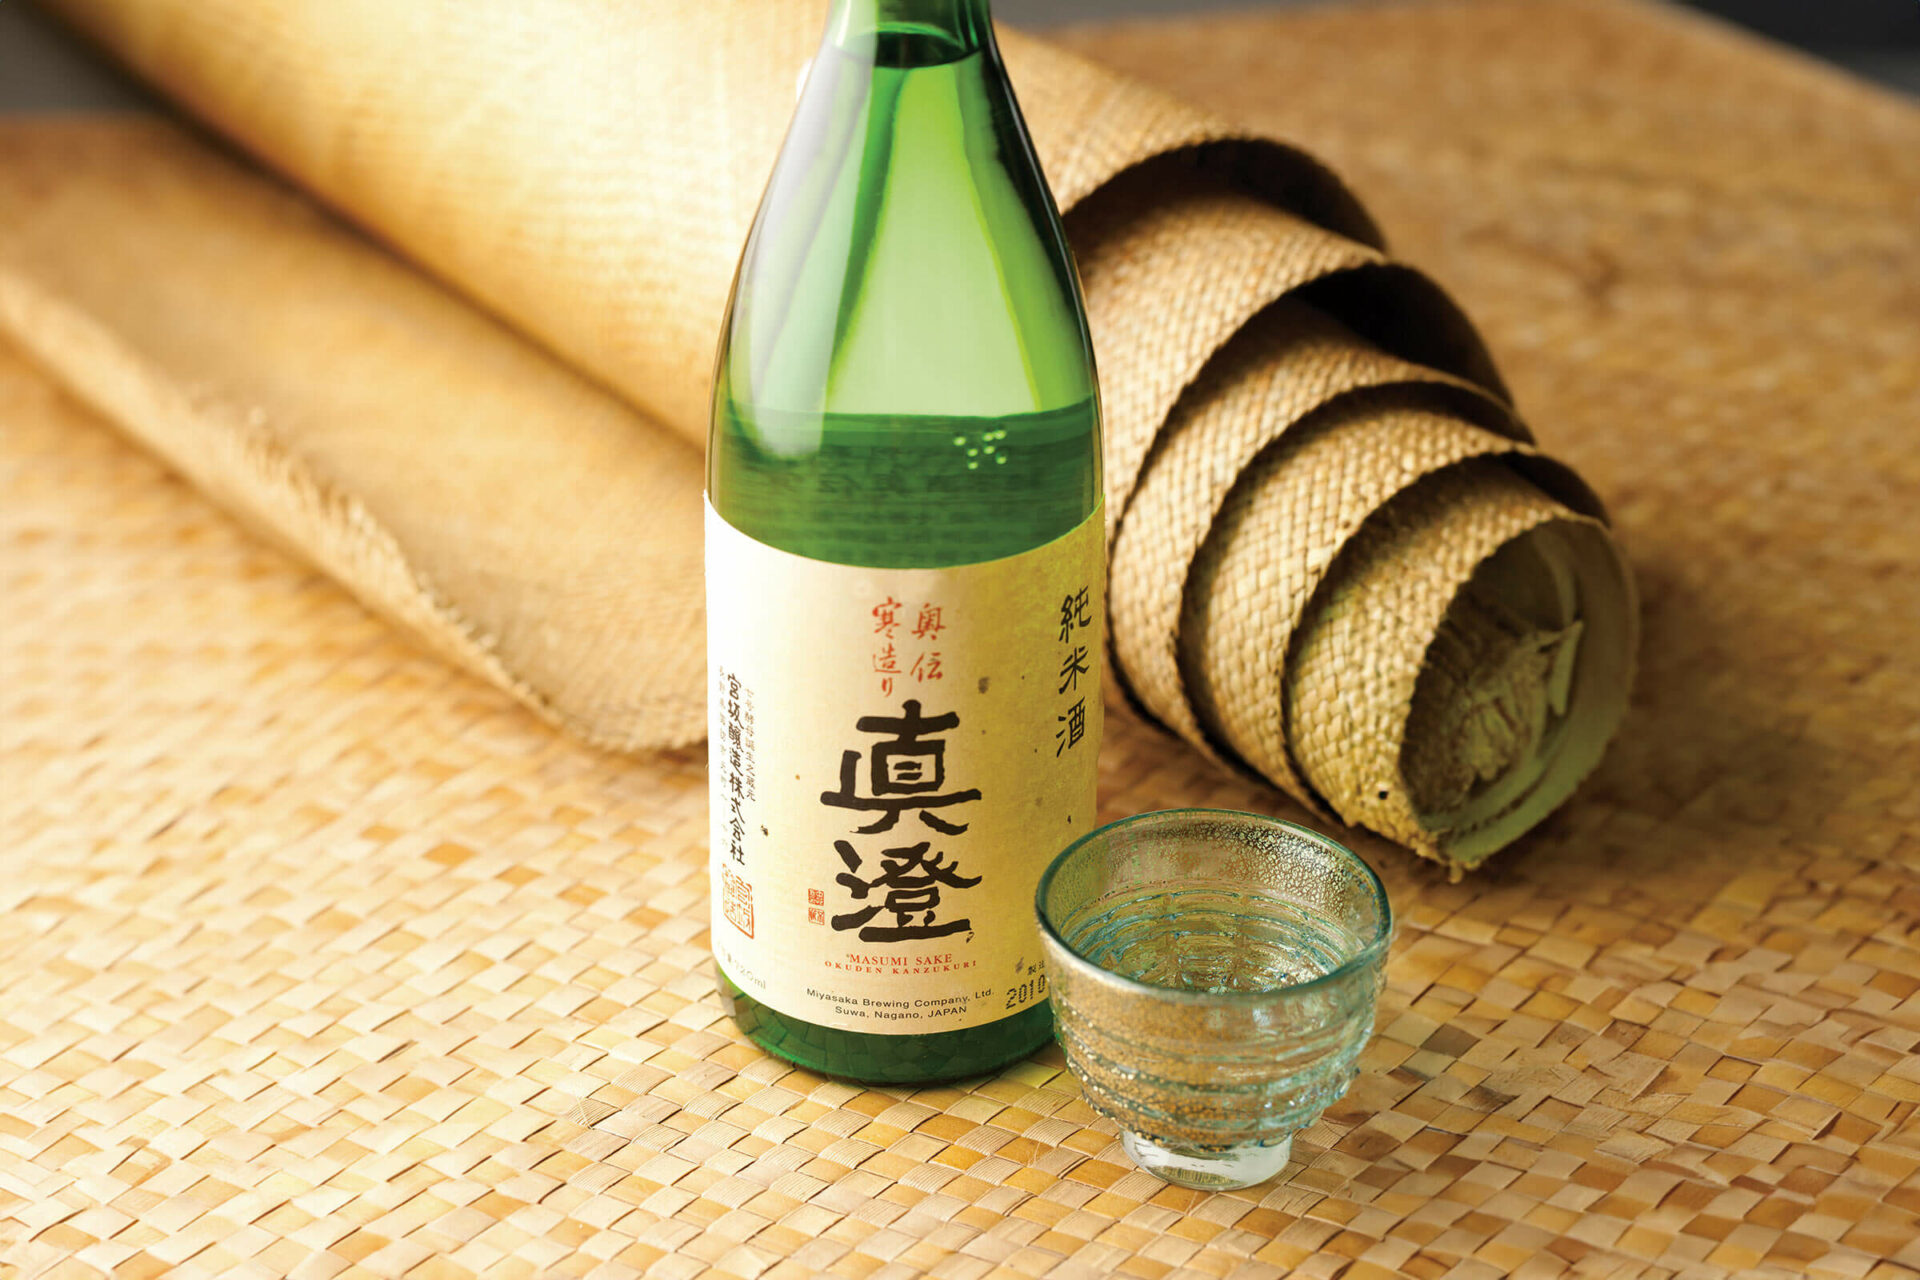 Masumi “Okuden Kantsukuri” bottle